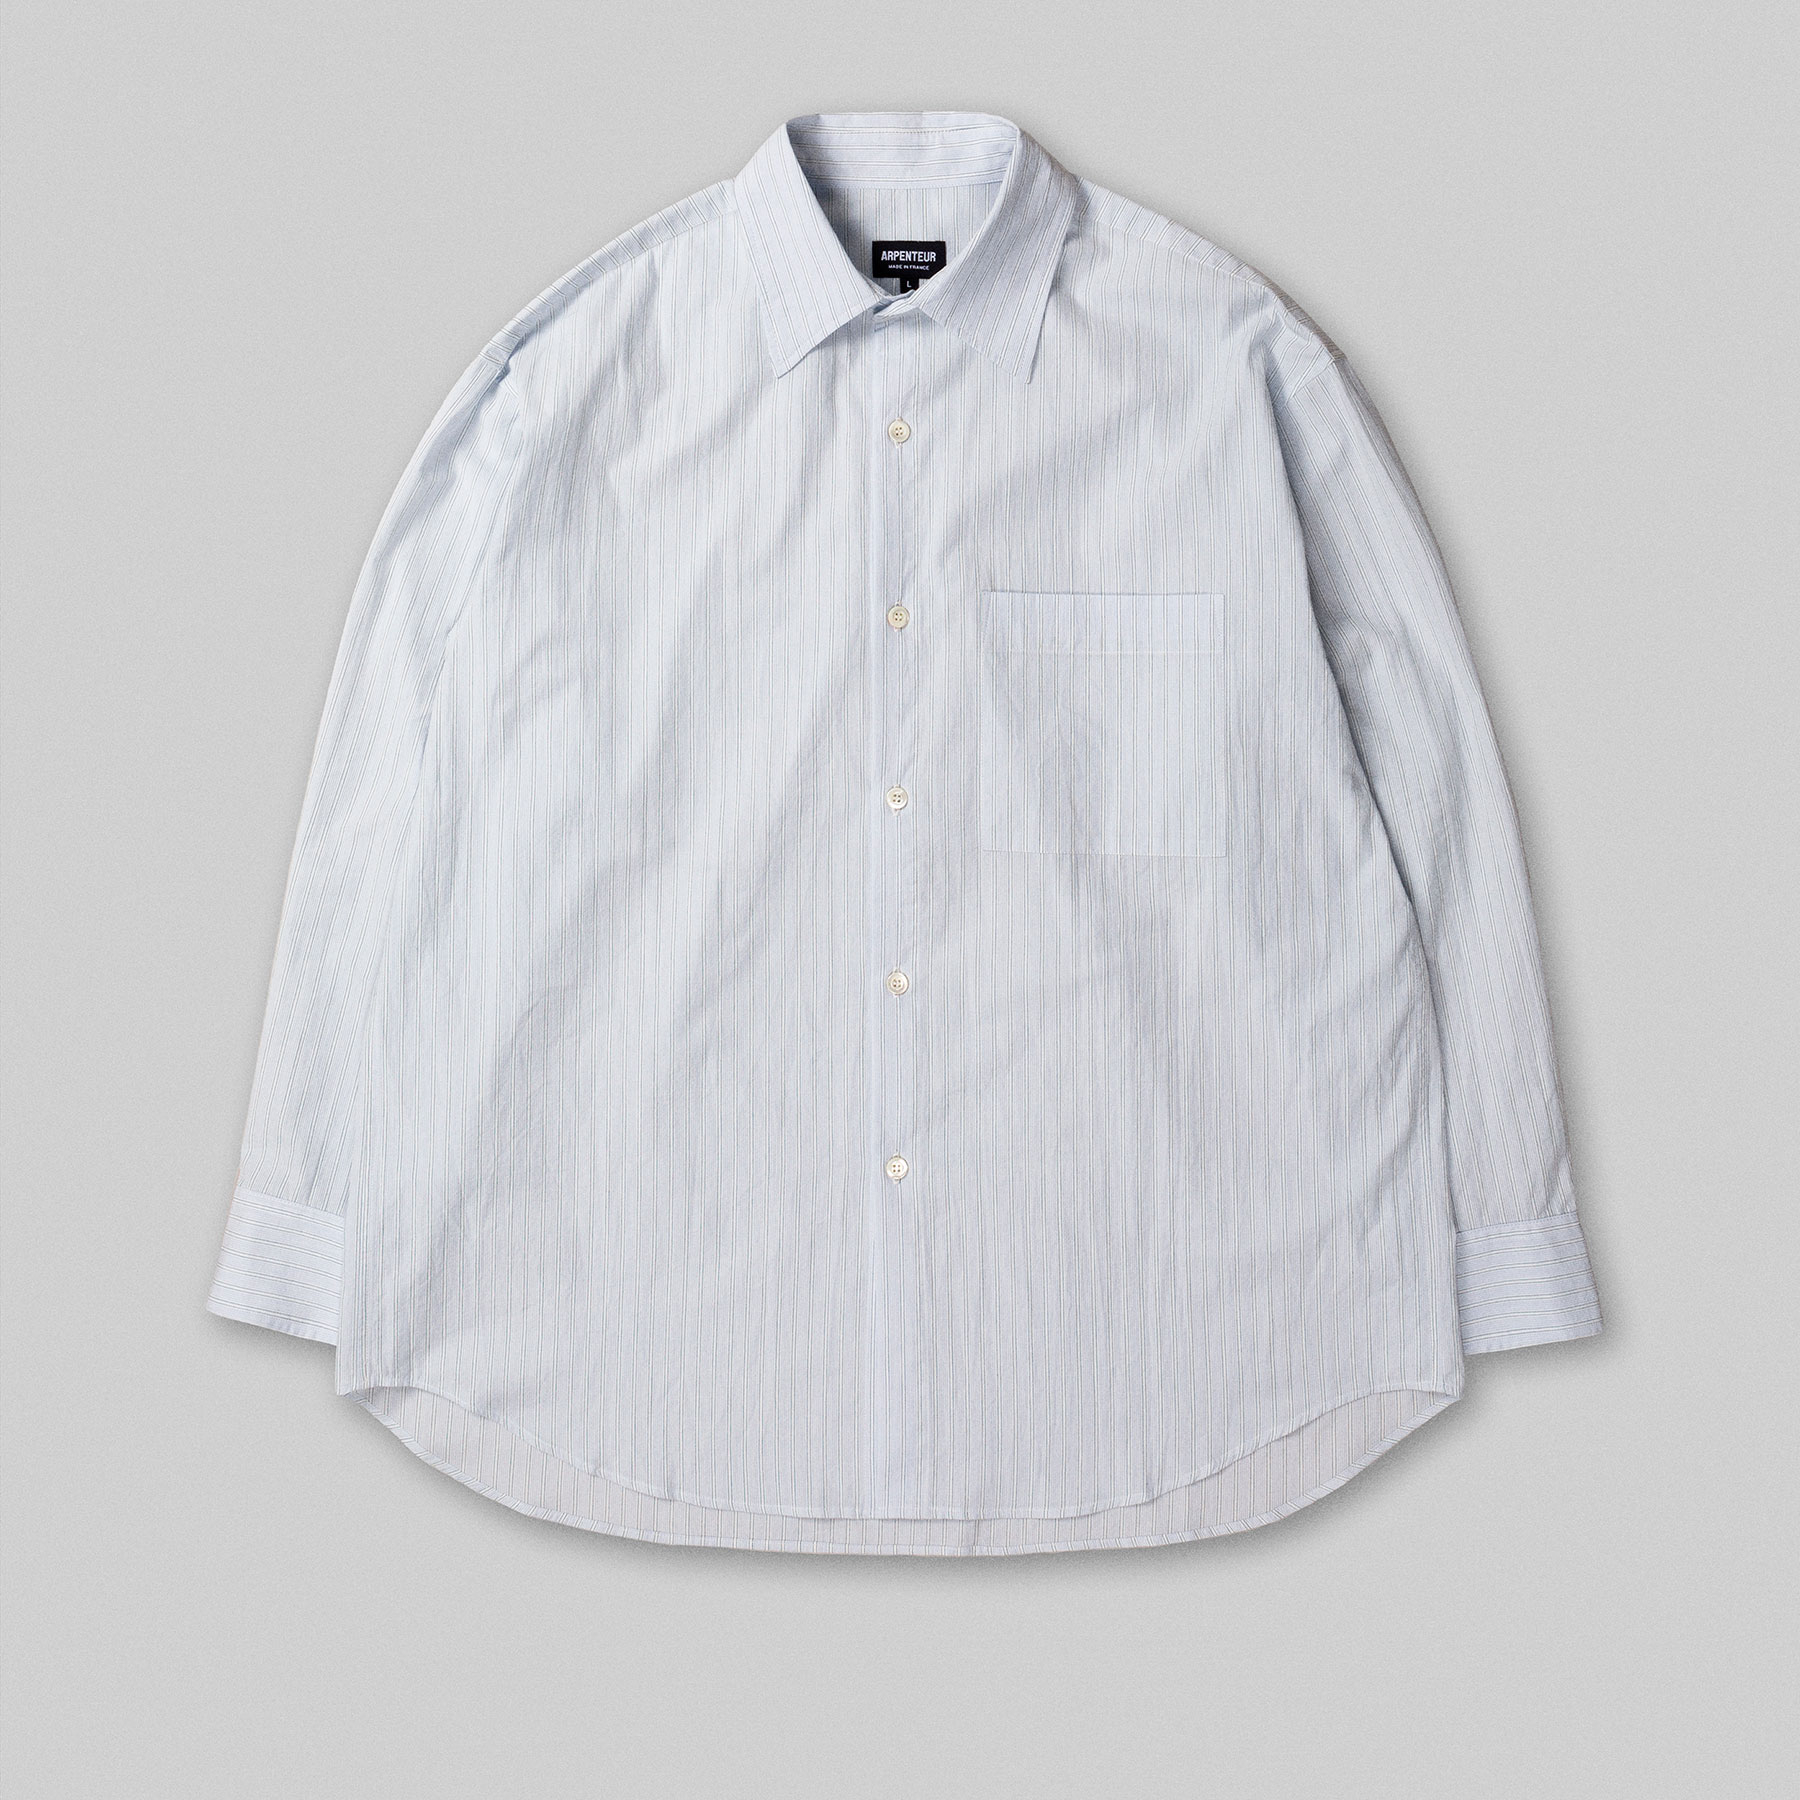 DORIS shirt by Arpenteur in Retro stripes color